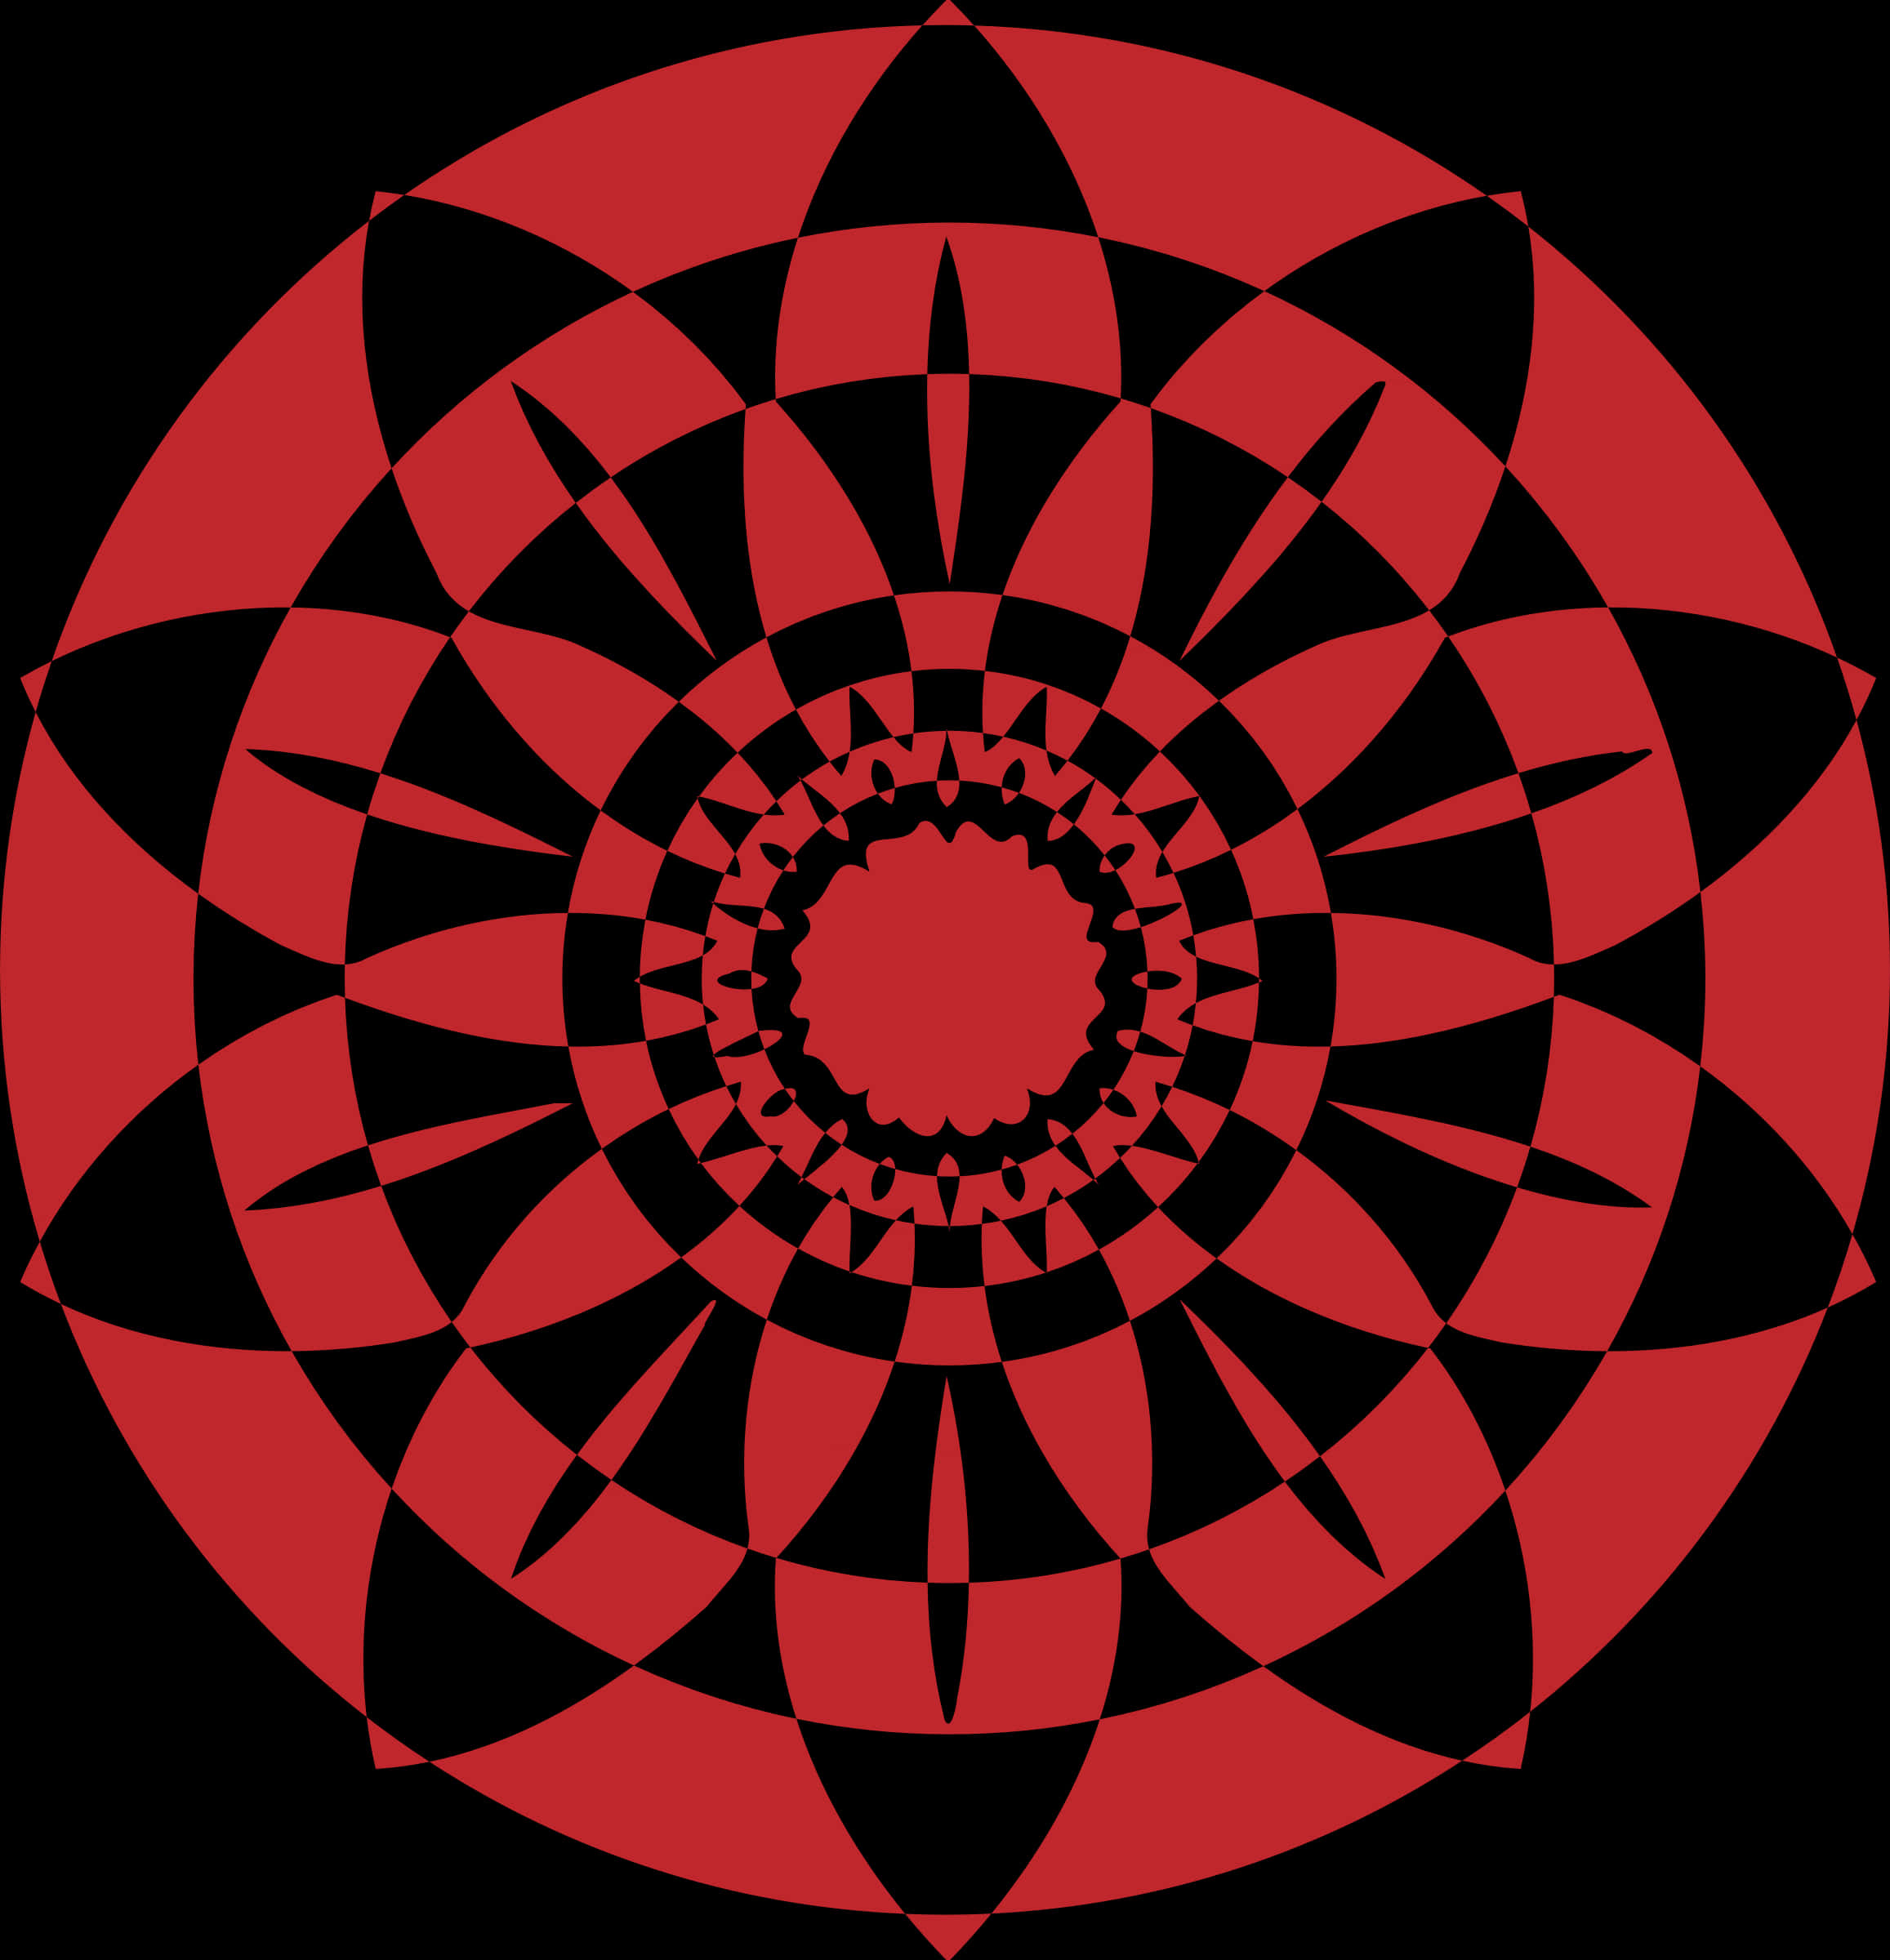 Redand Black Abstract Mandala PNG image